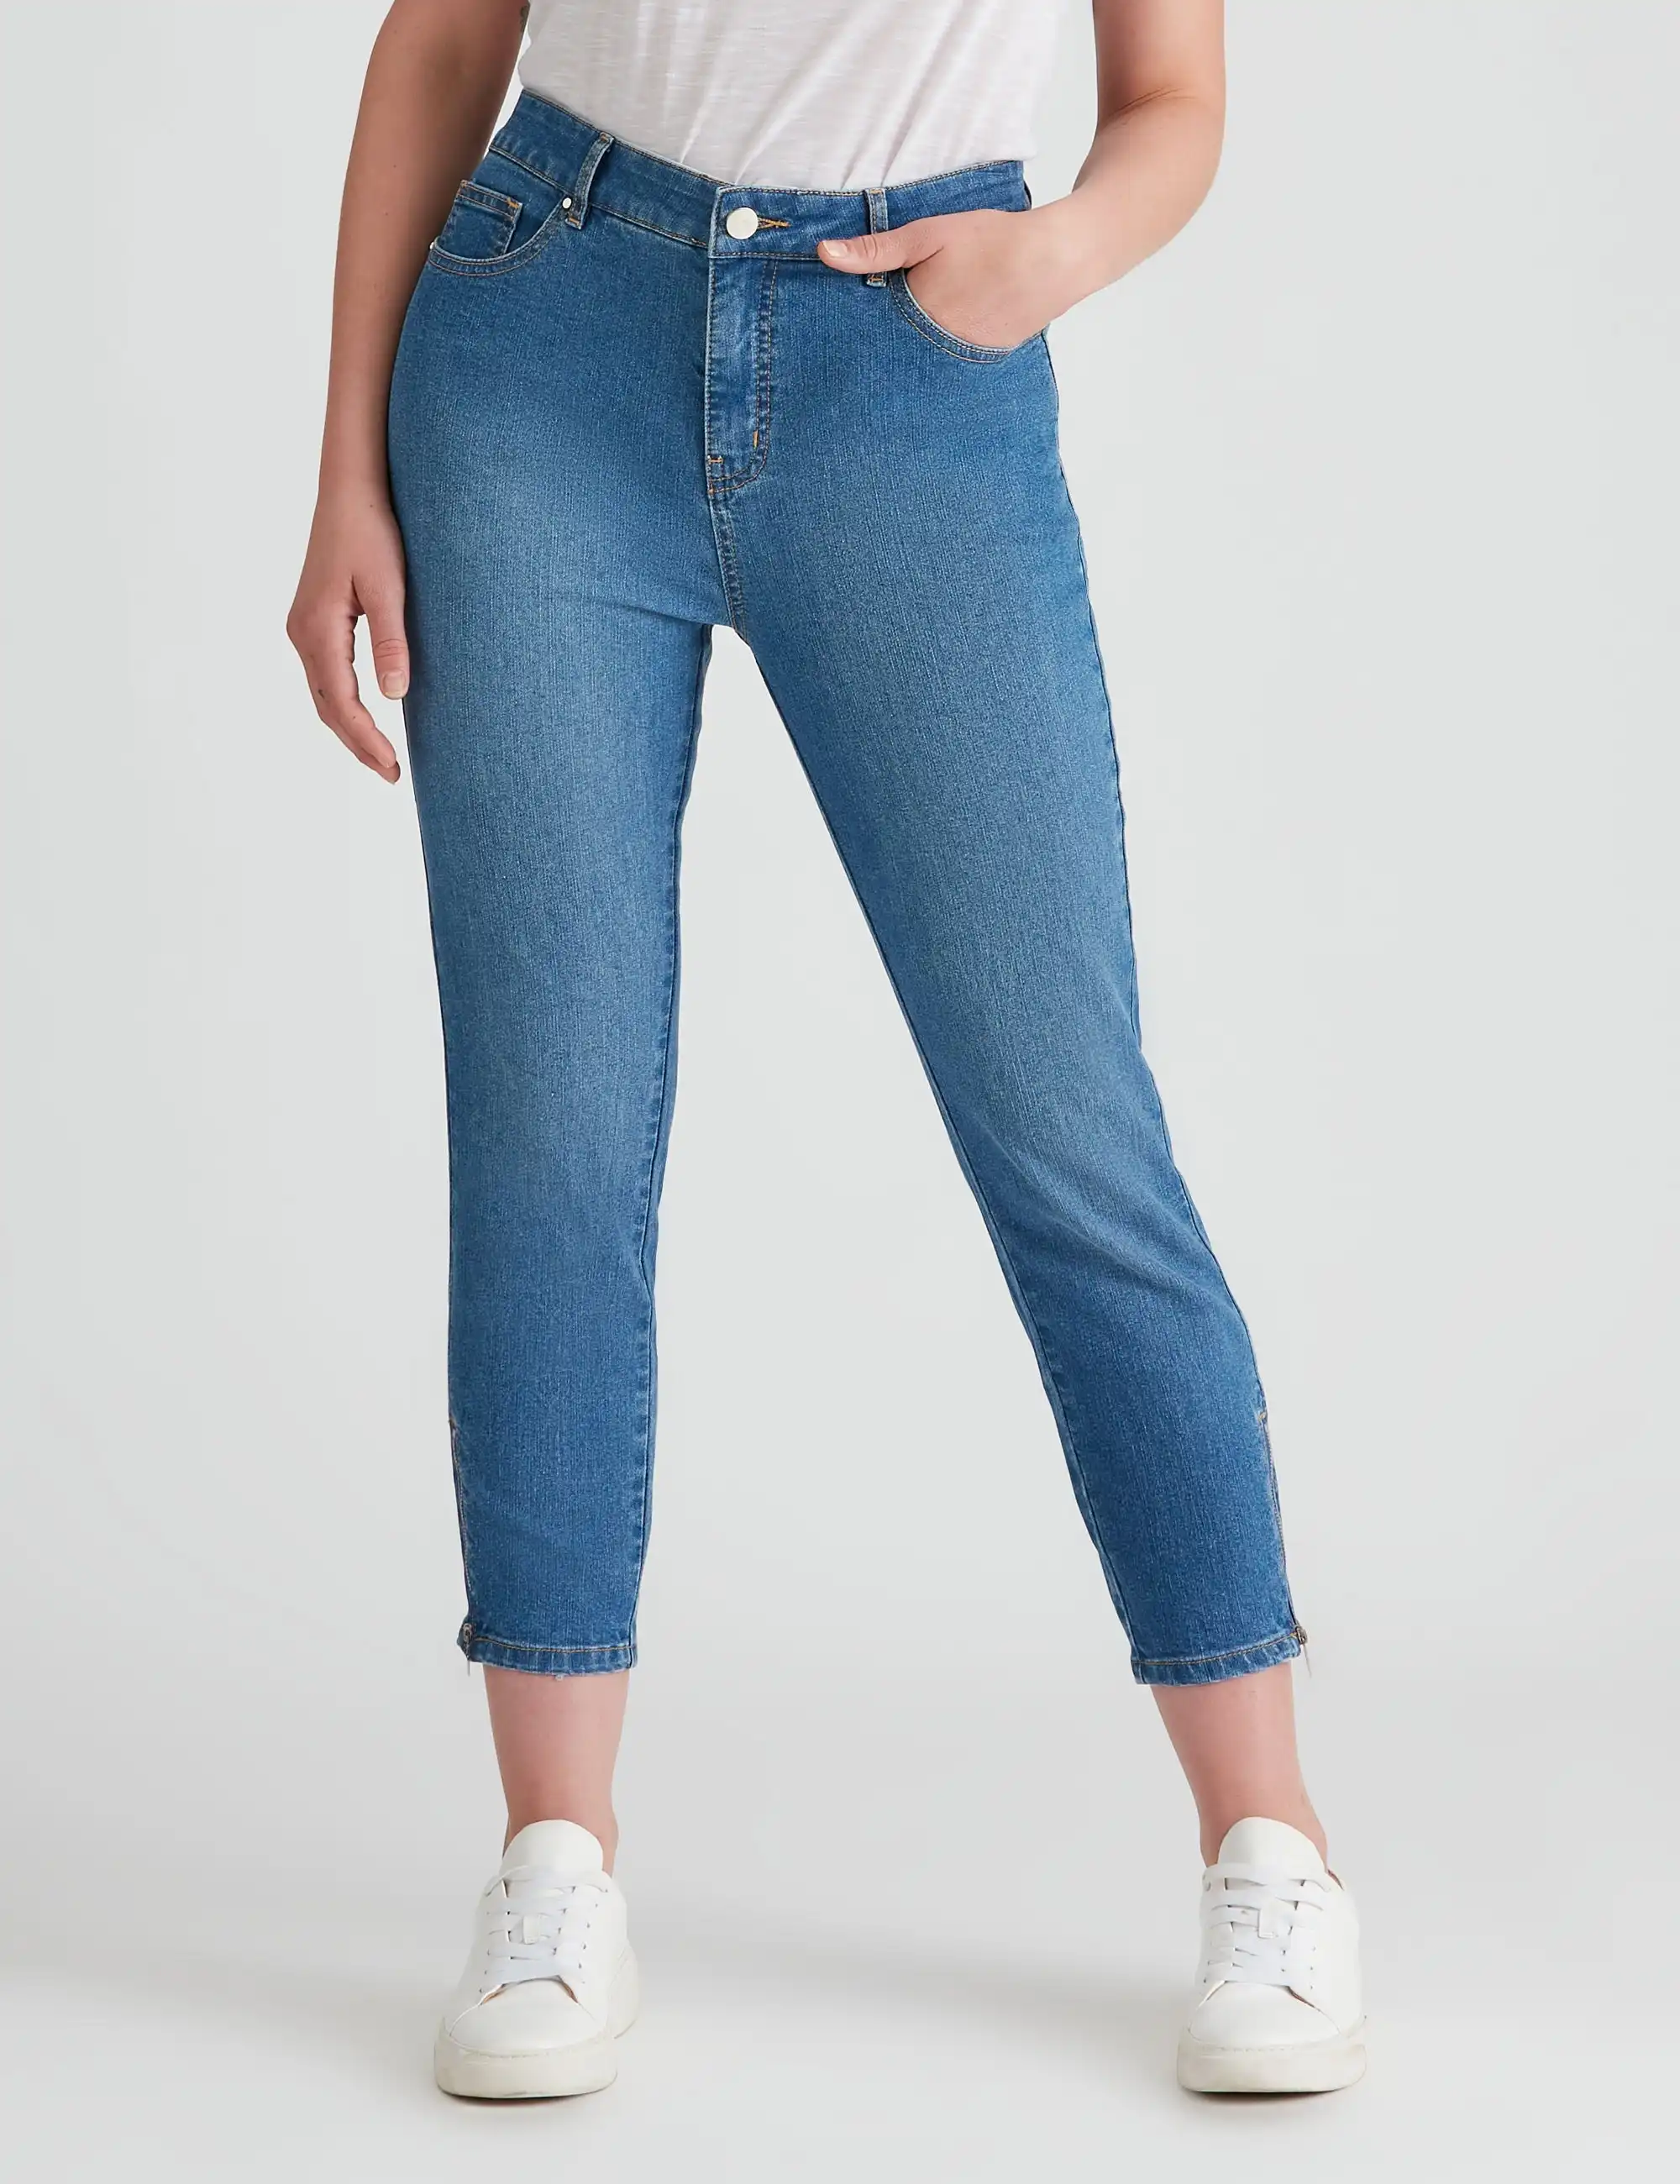 Rockmans 7/8 Length Mid Wash Jeans